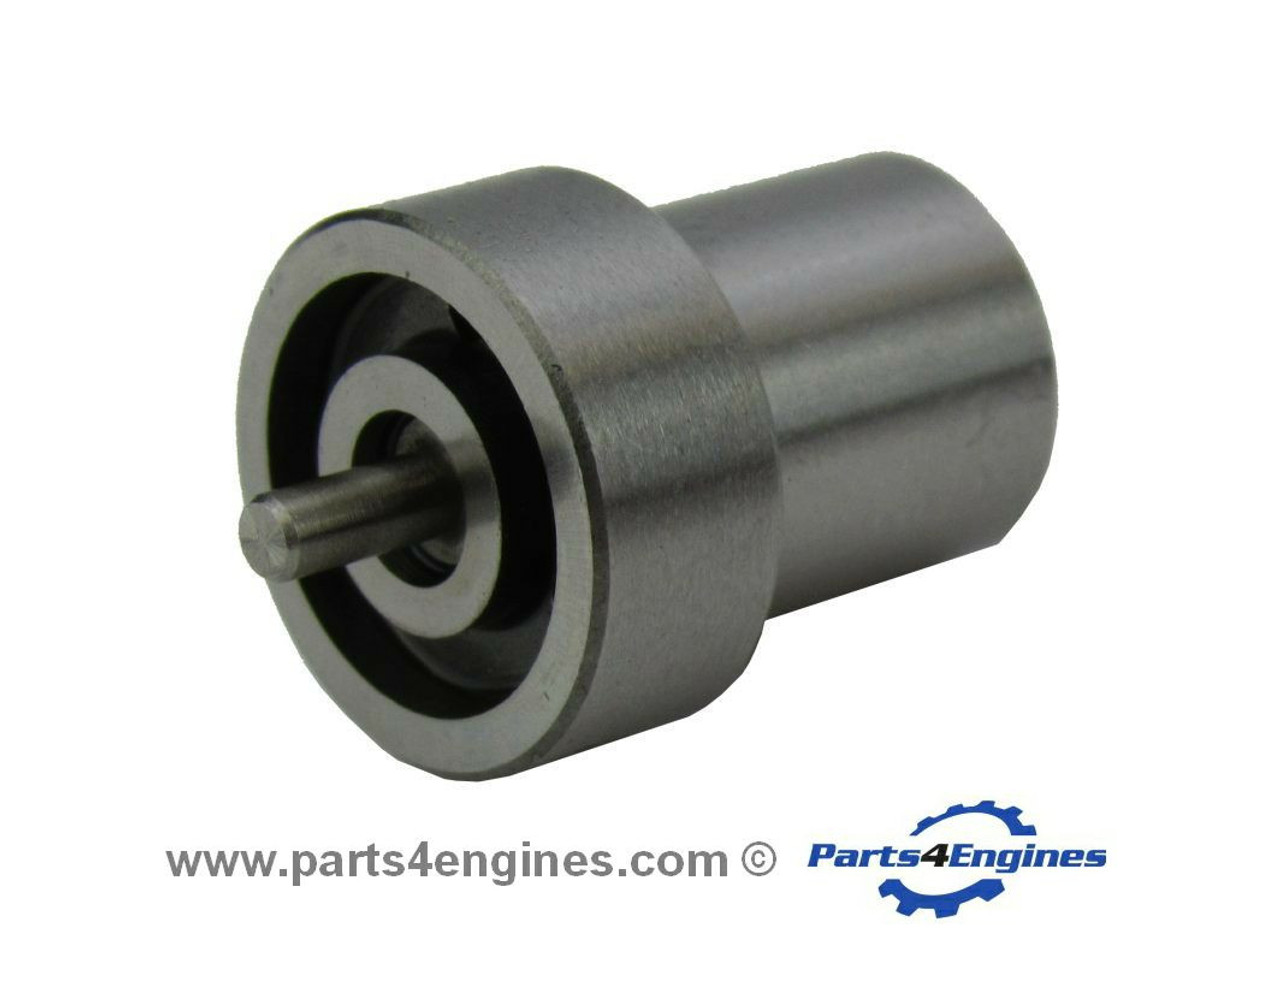 Perkins 100 series 103.15 Injector Nozzle - parts4engines.com